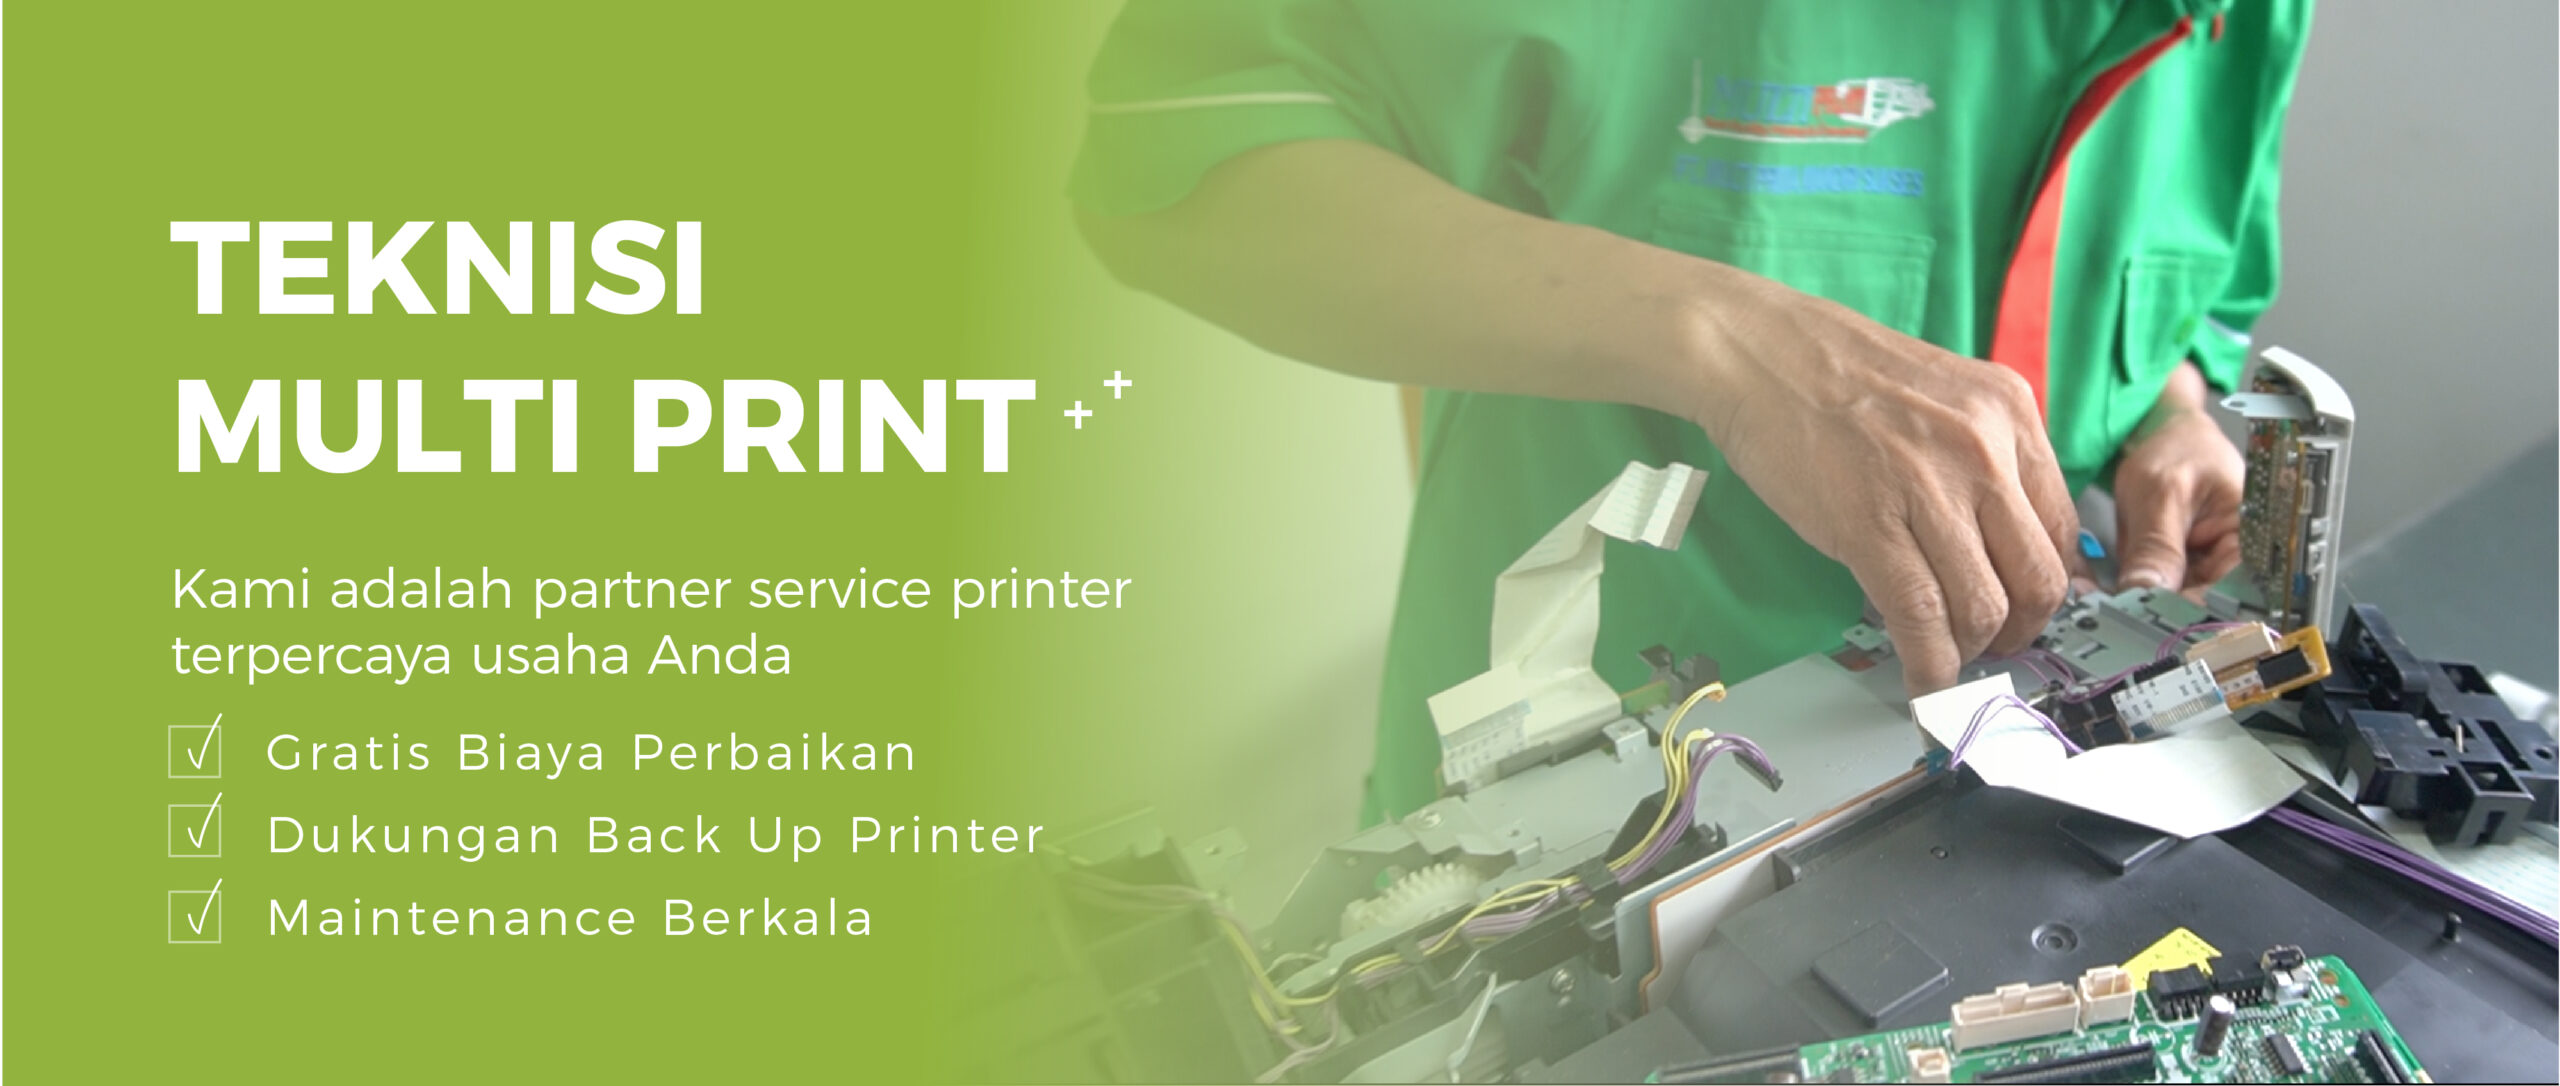 Teknisi printer repairing